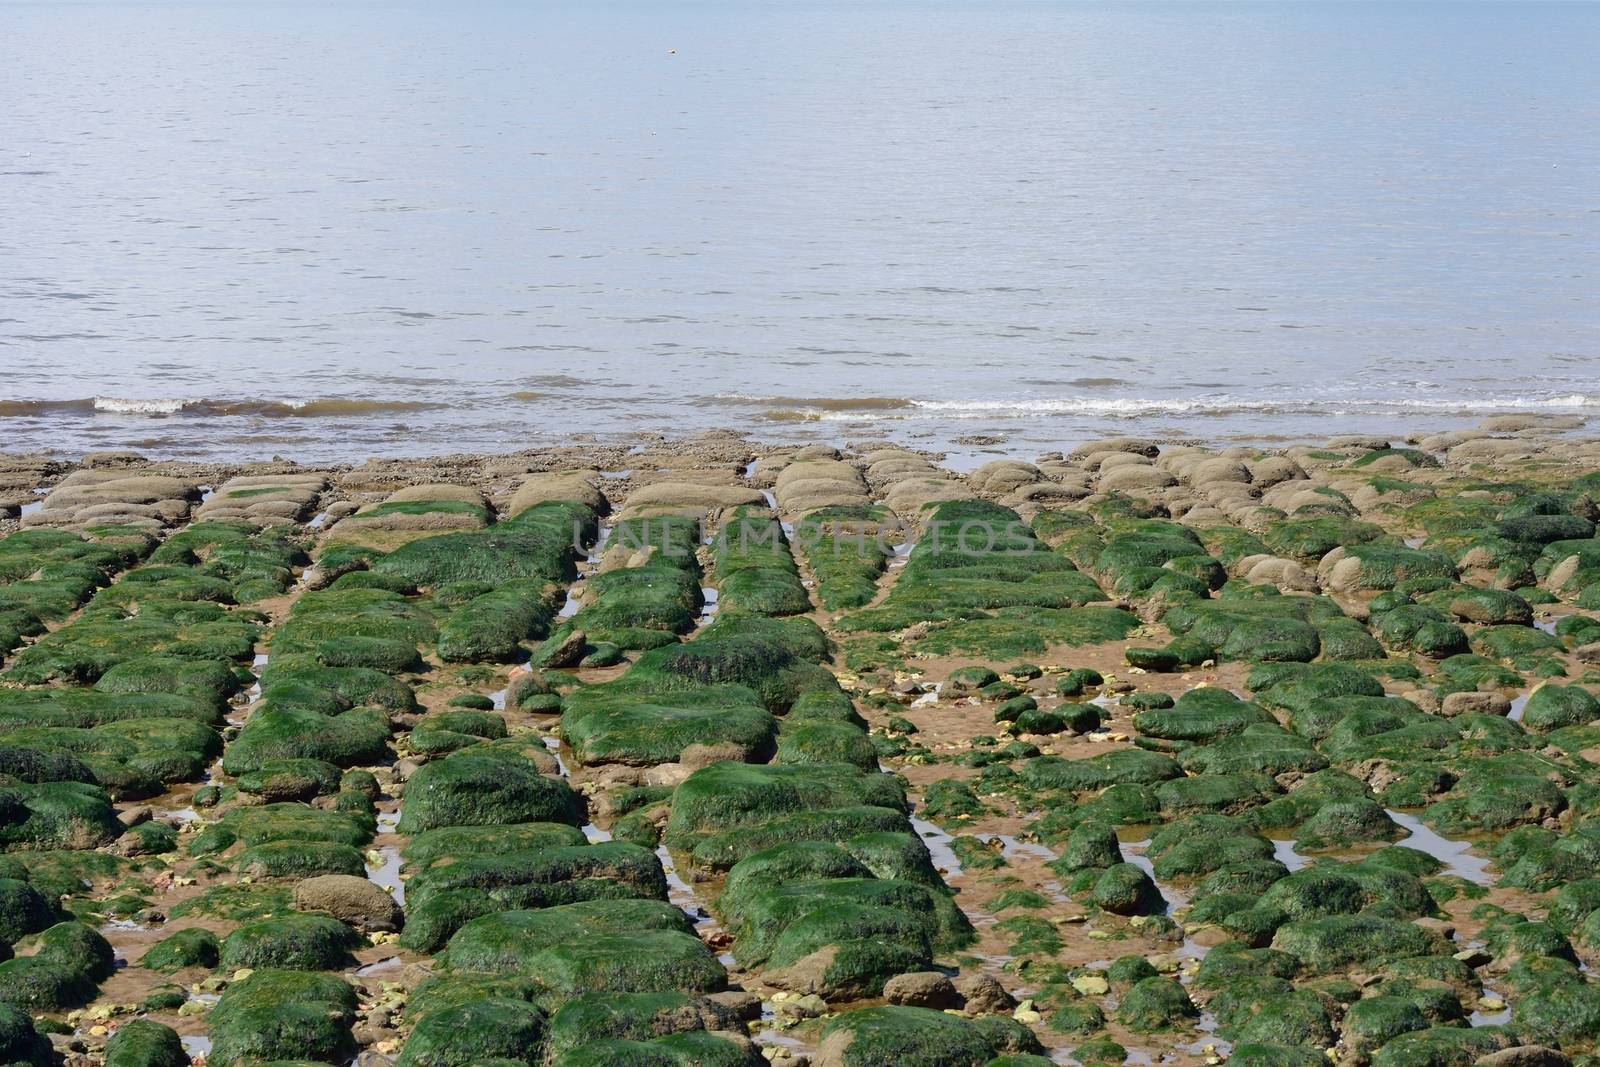 Stony coastal strip with seaweed  by pauws99